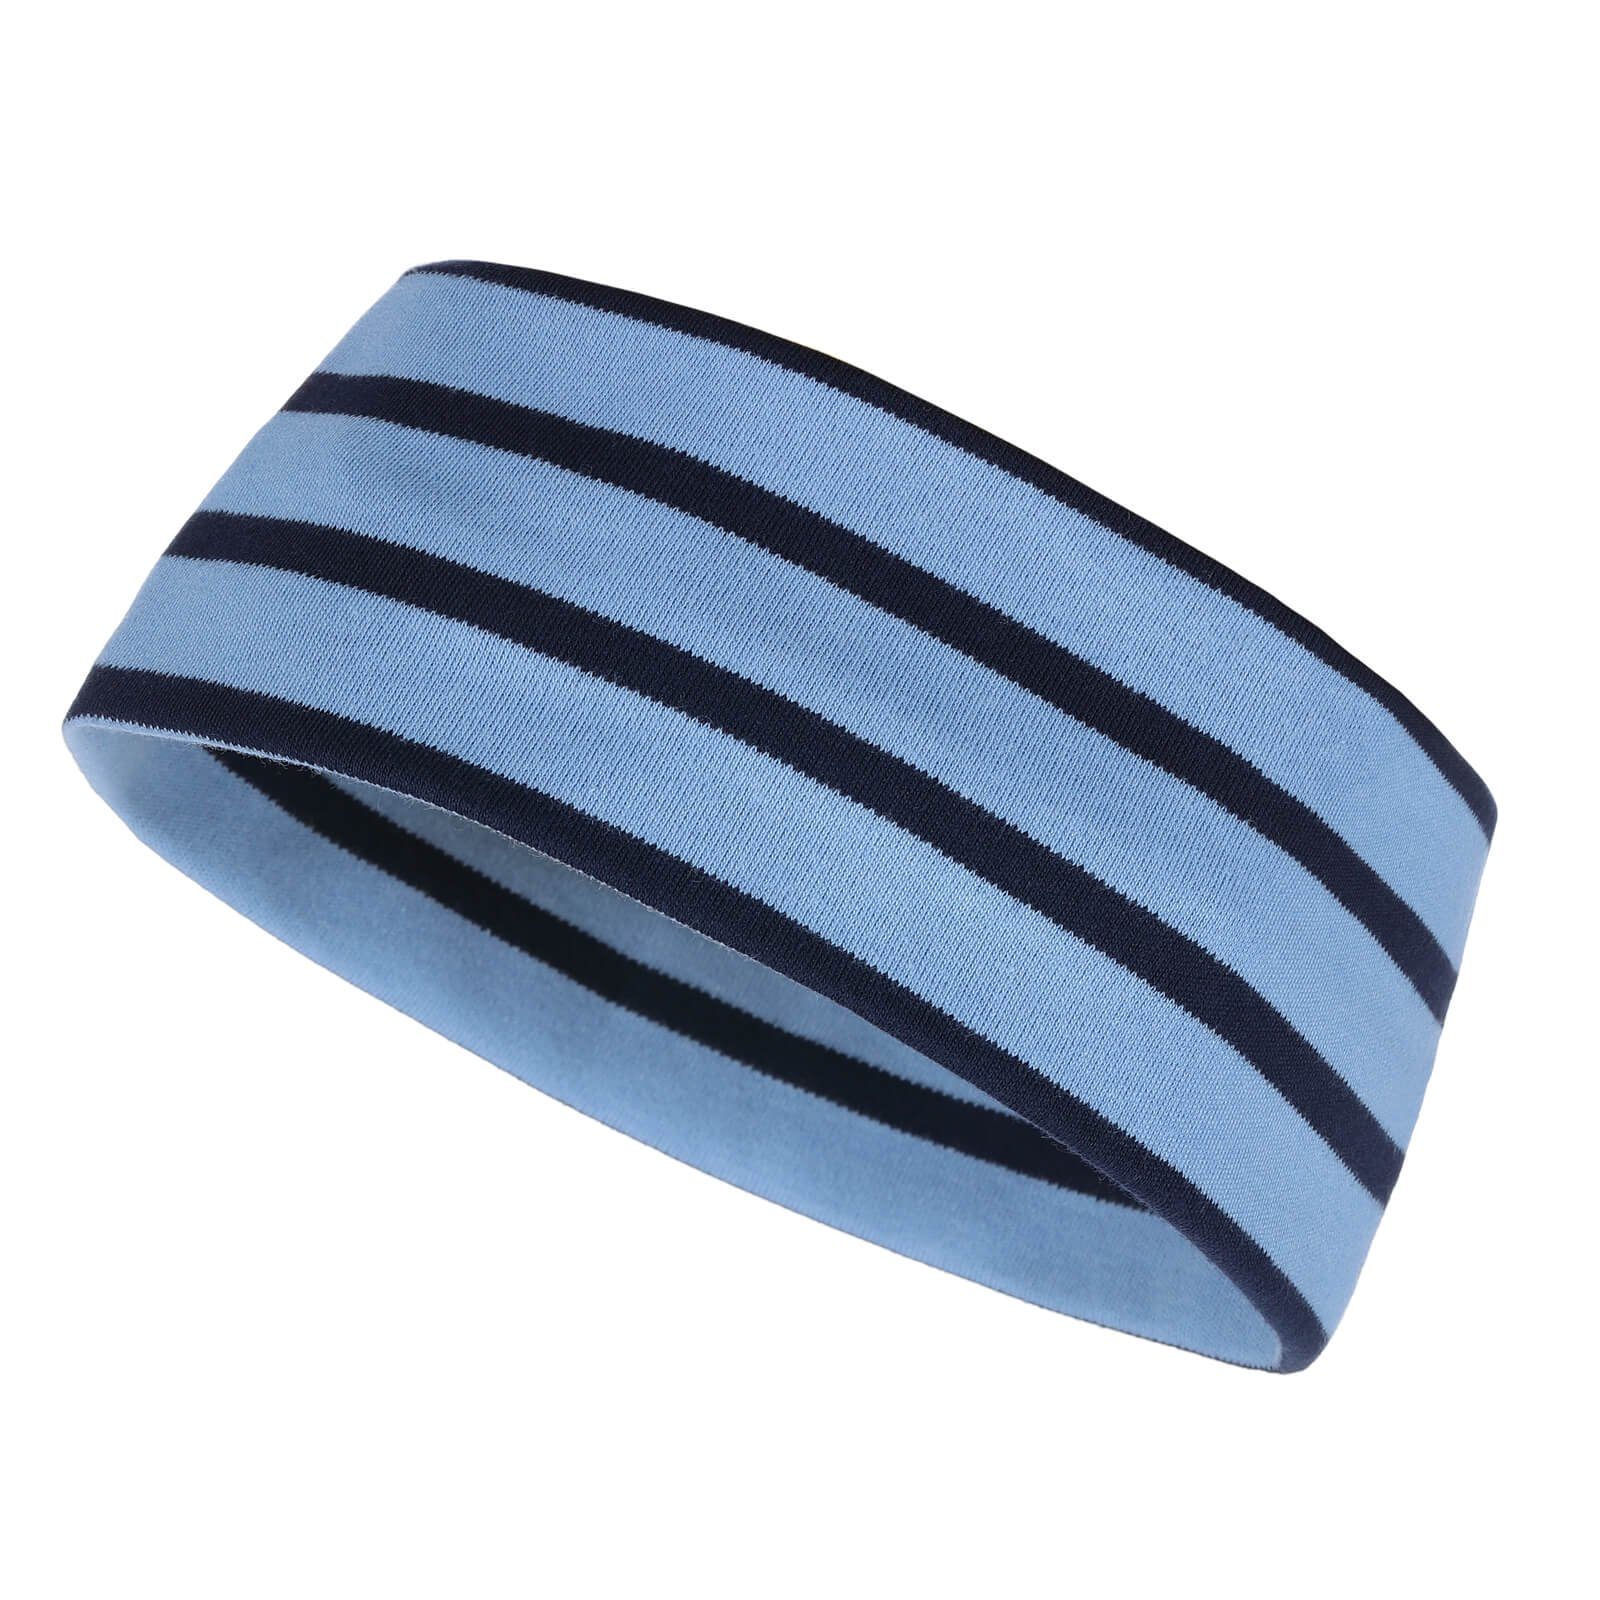 modAS Stirnband Unisex Kopfband Maritim für Kinder und Erwachsene zweilagig Baumwolle (47) azur / blau